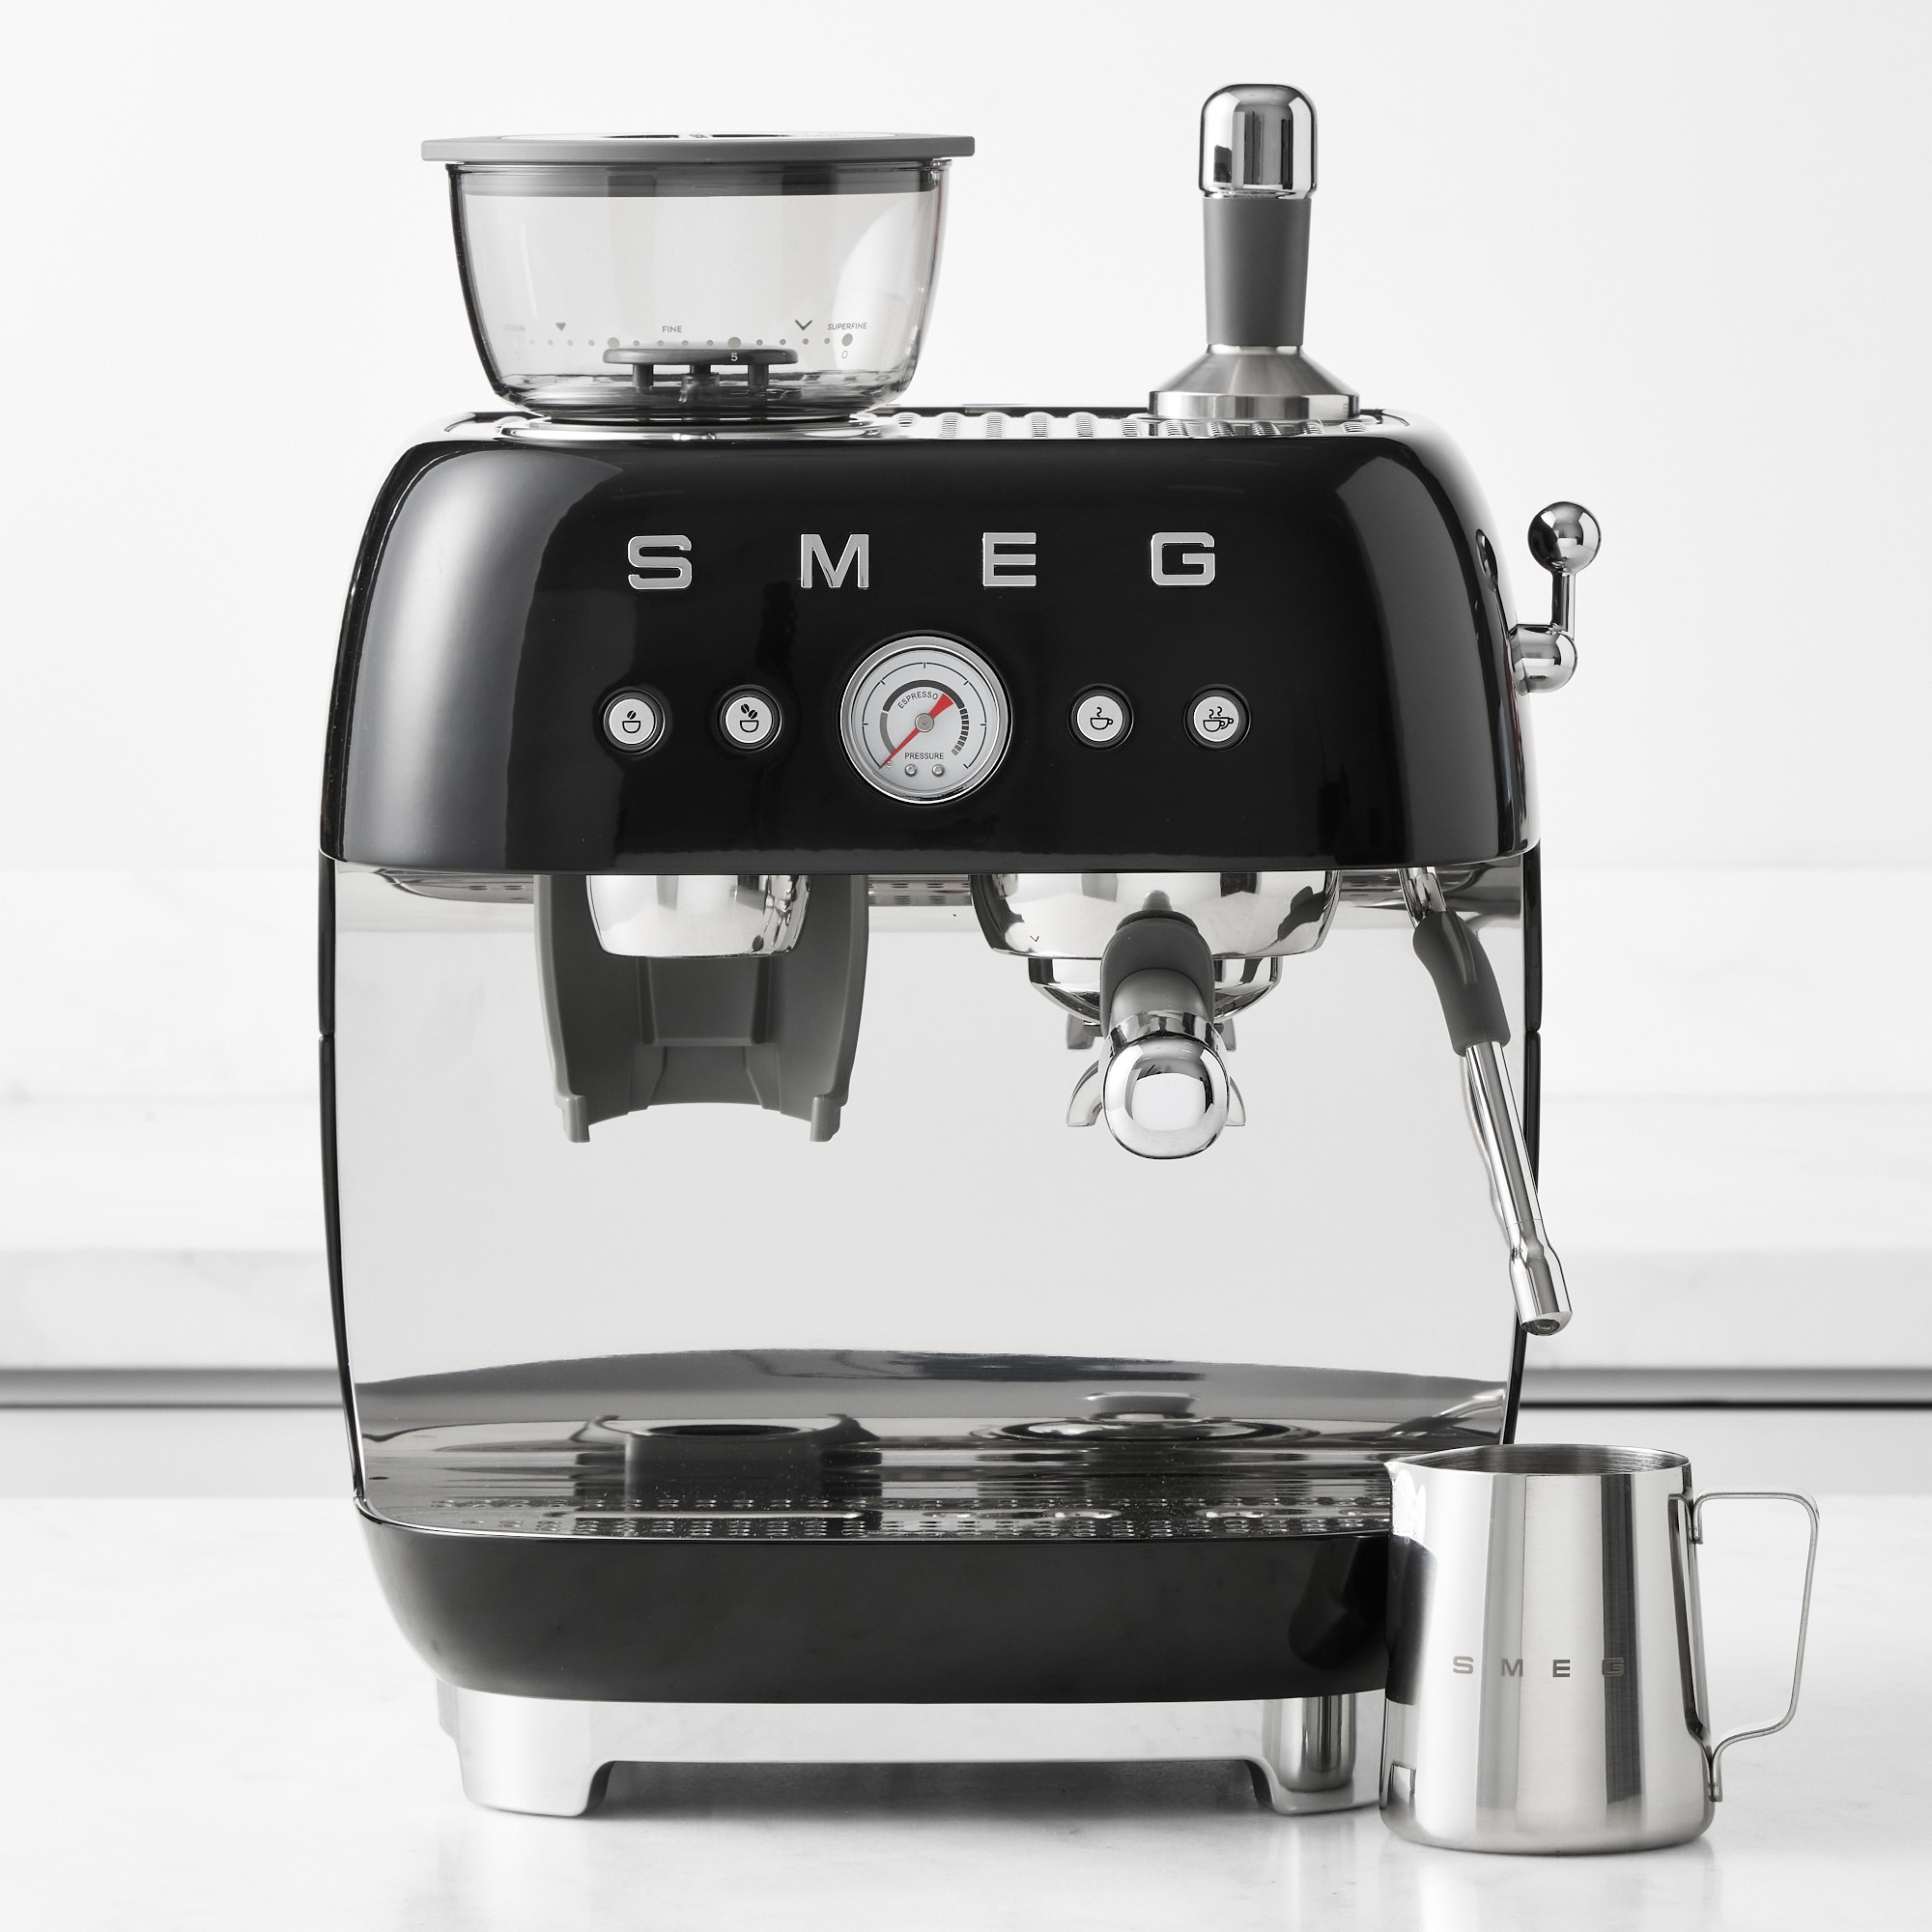 SMEG Semi-Automatic Espresso Machine in Black